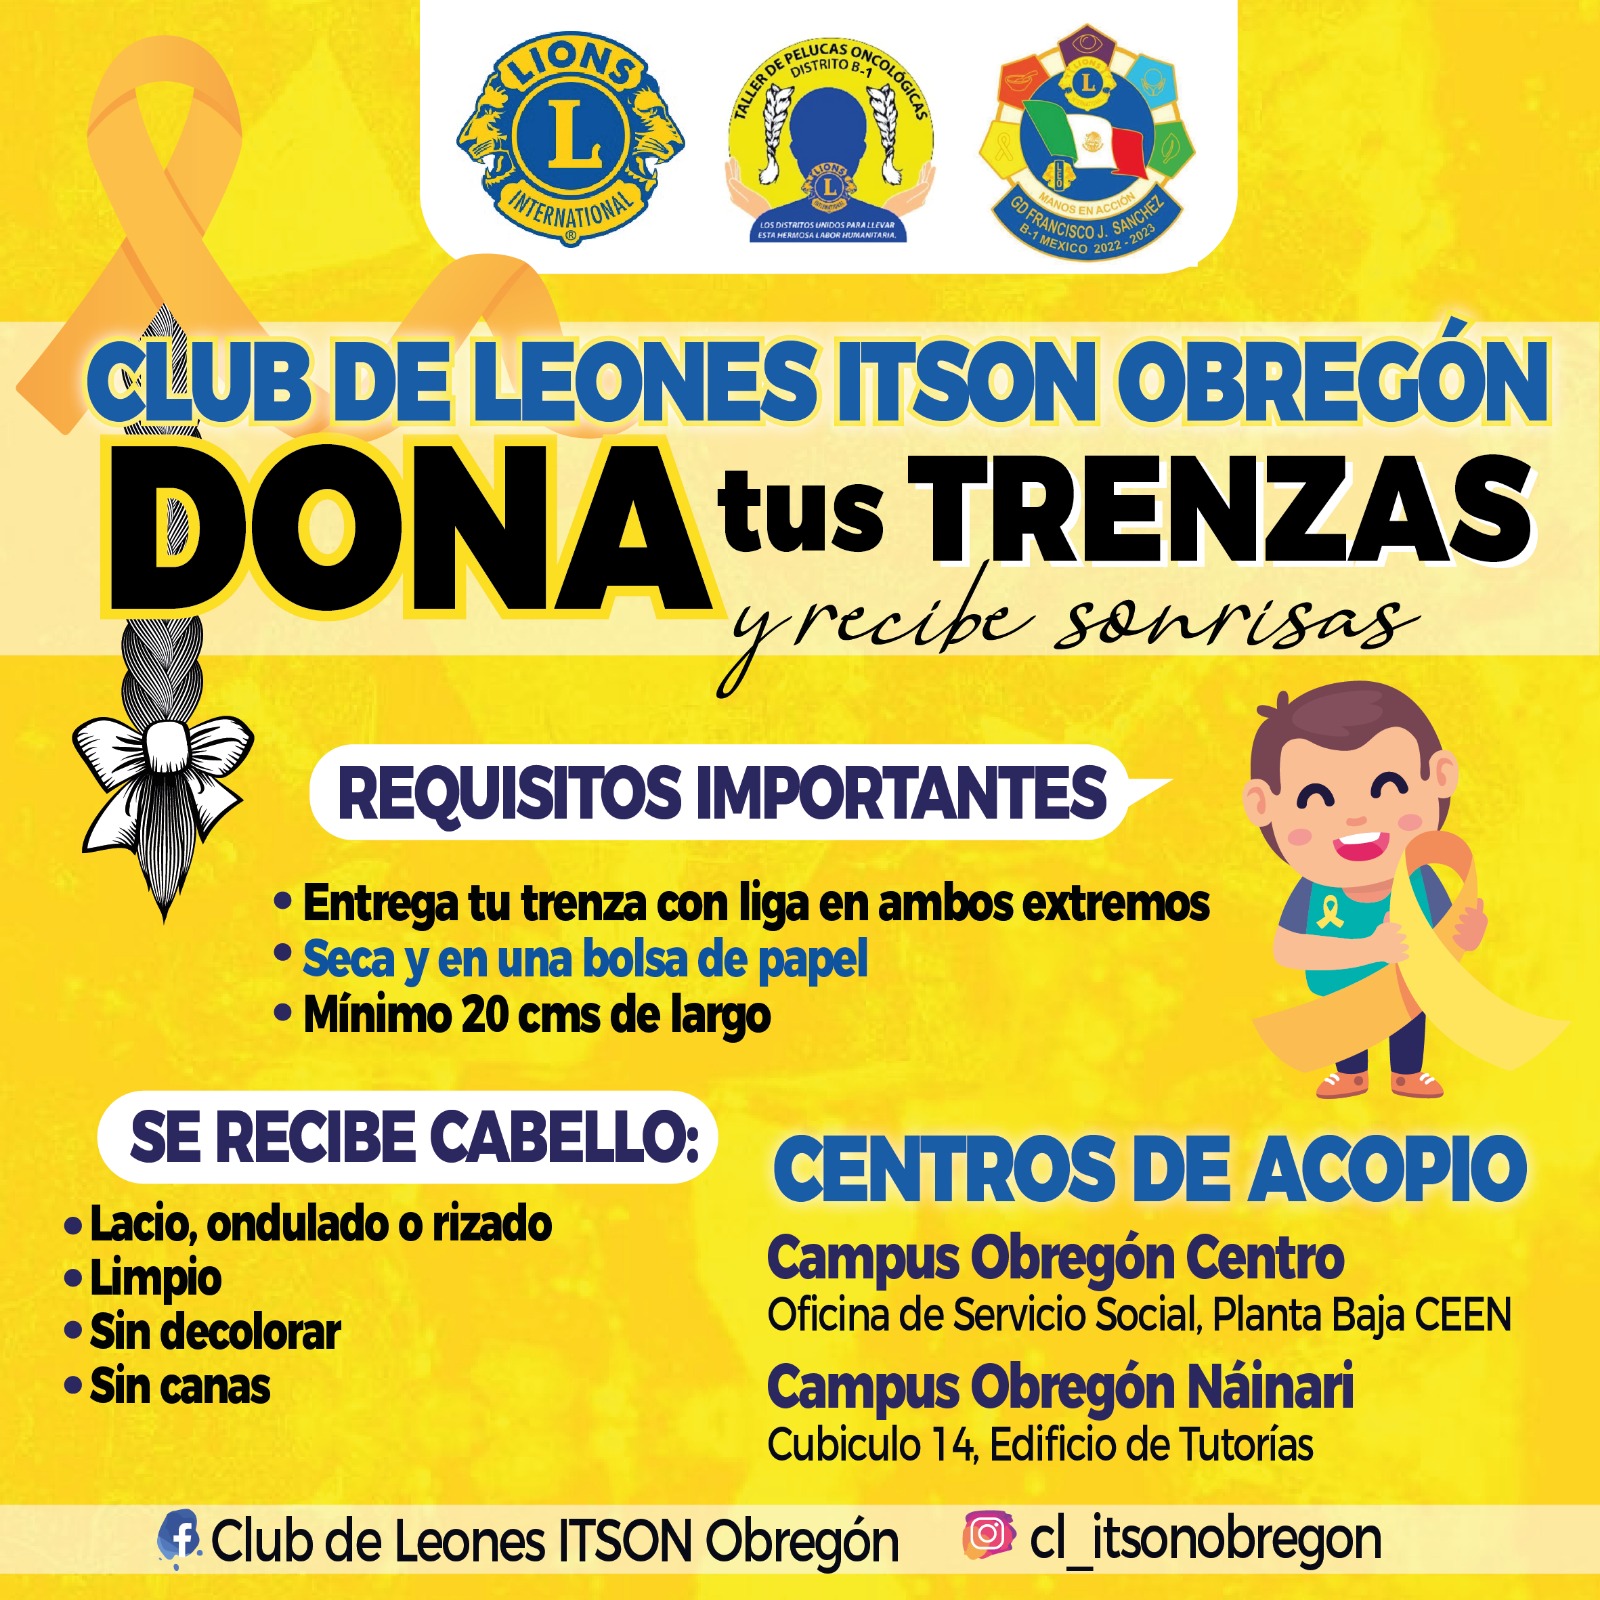 Club de Leones ITSON Obregón (@cl_itsonobregon) / Twitter